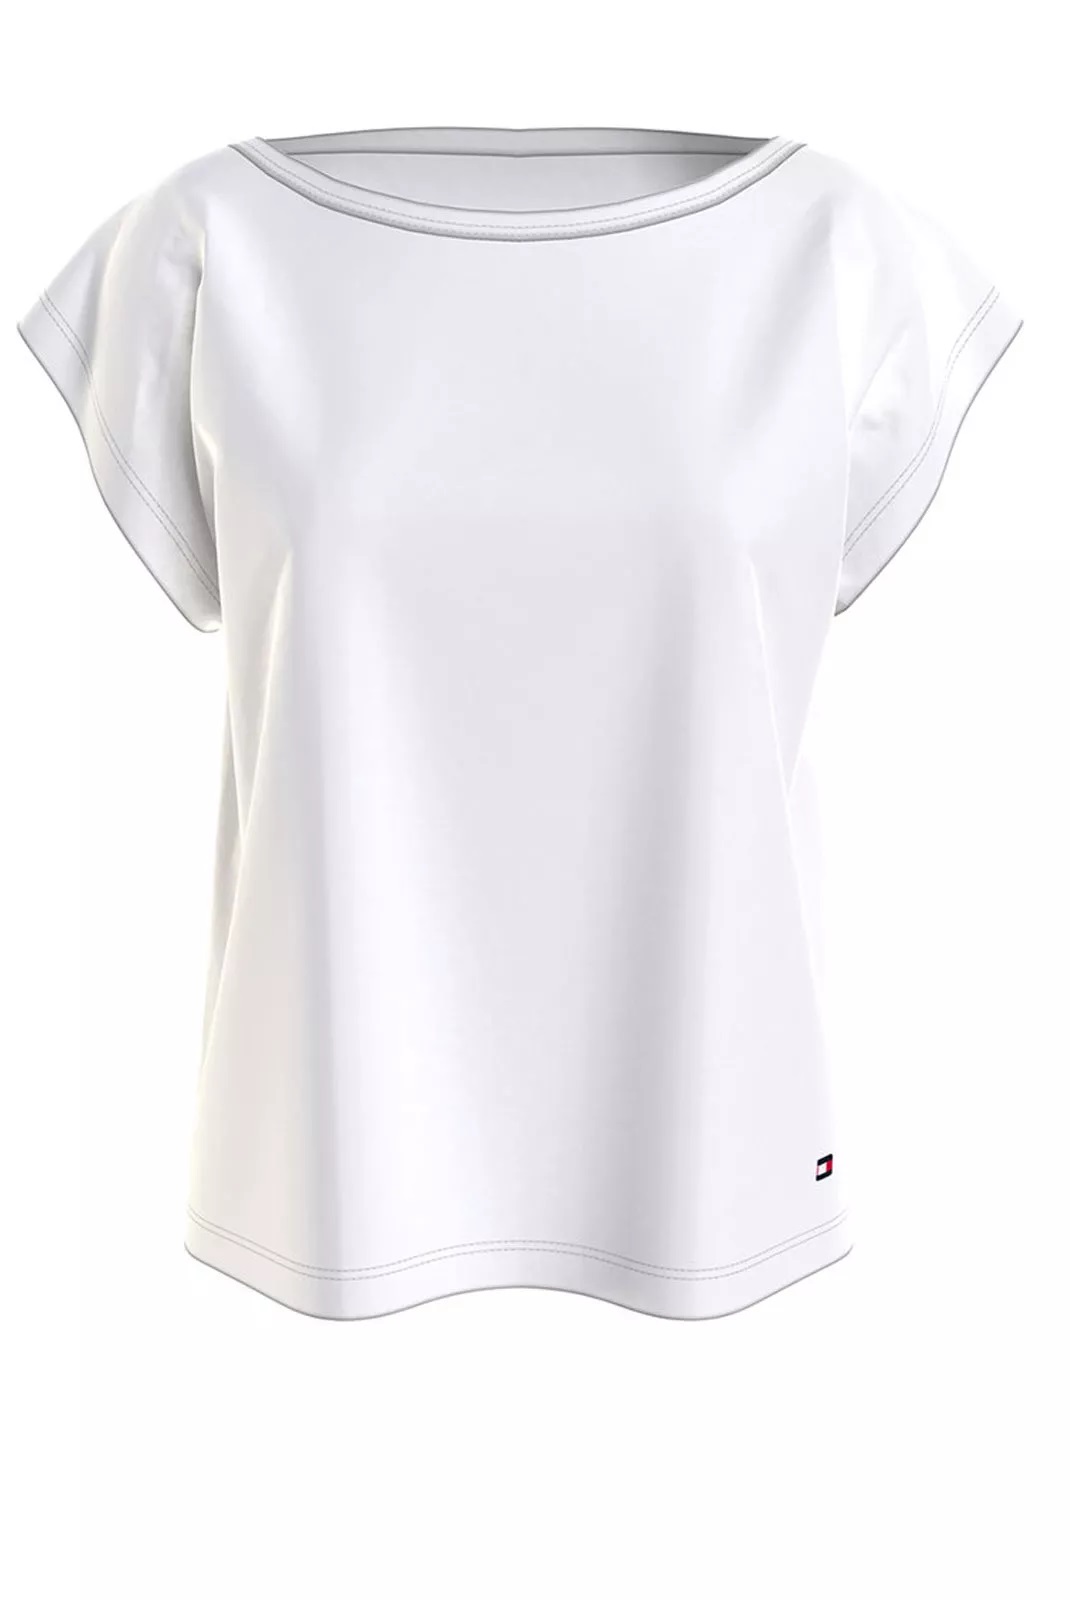 Tommy Hilfiger dámské tričko s logem bílé Velikost: S